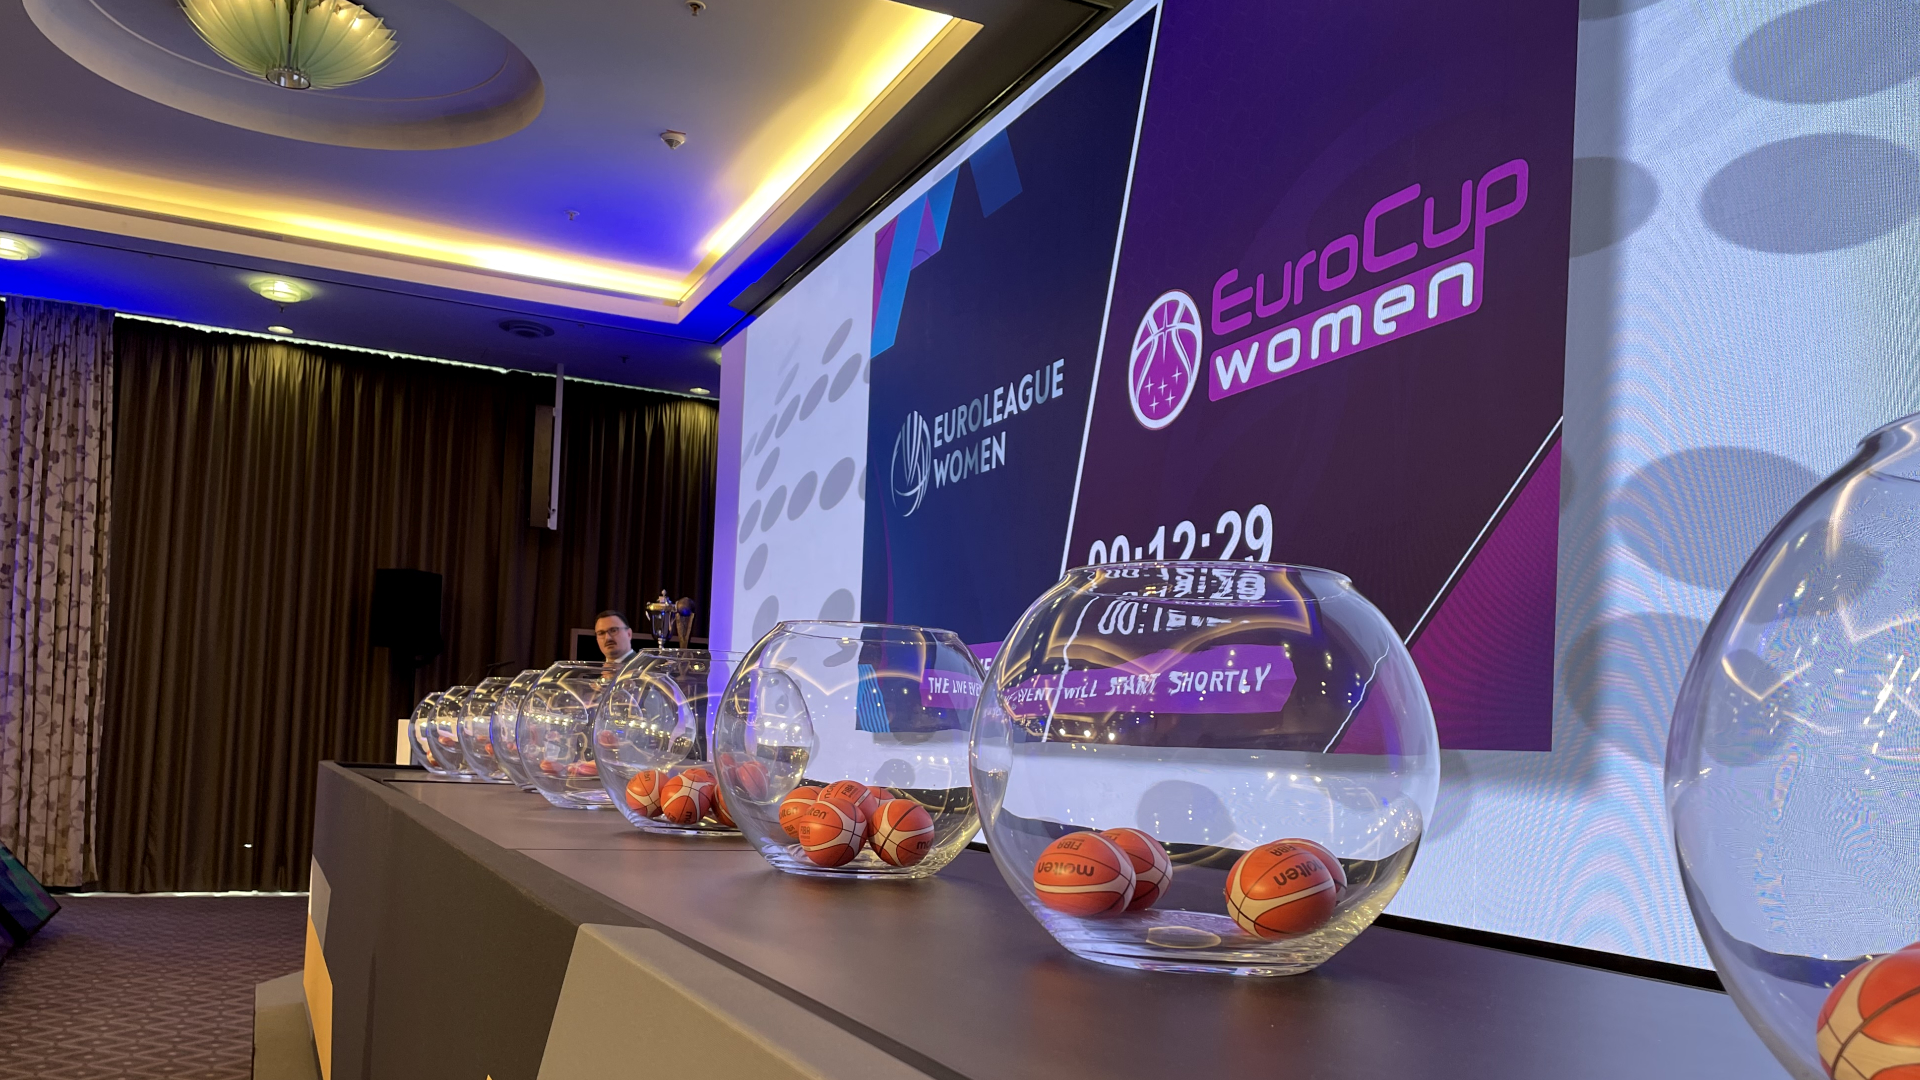 eurocup_women22_23